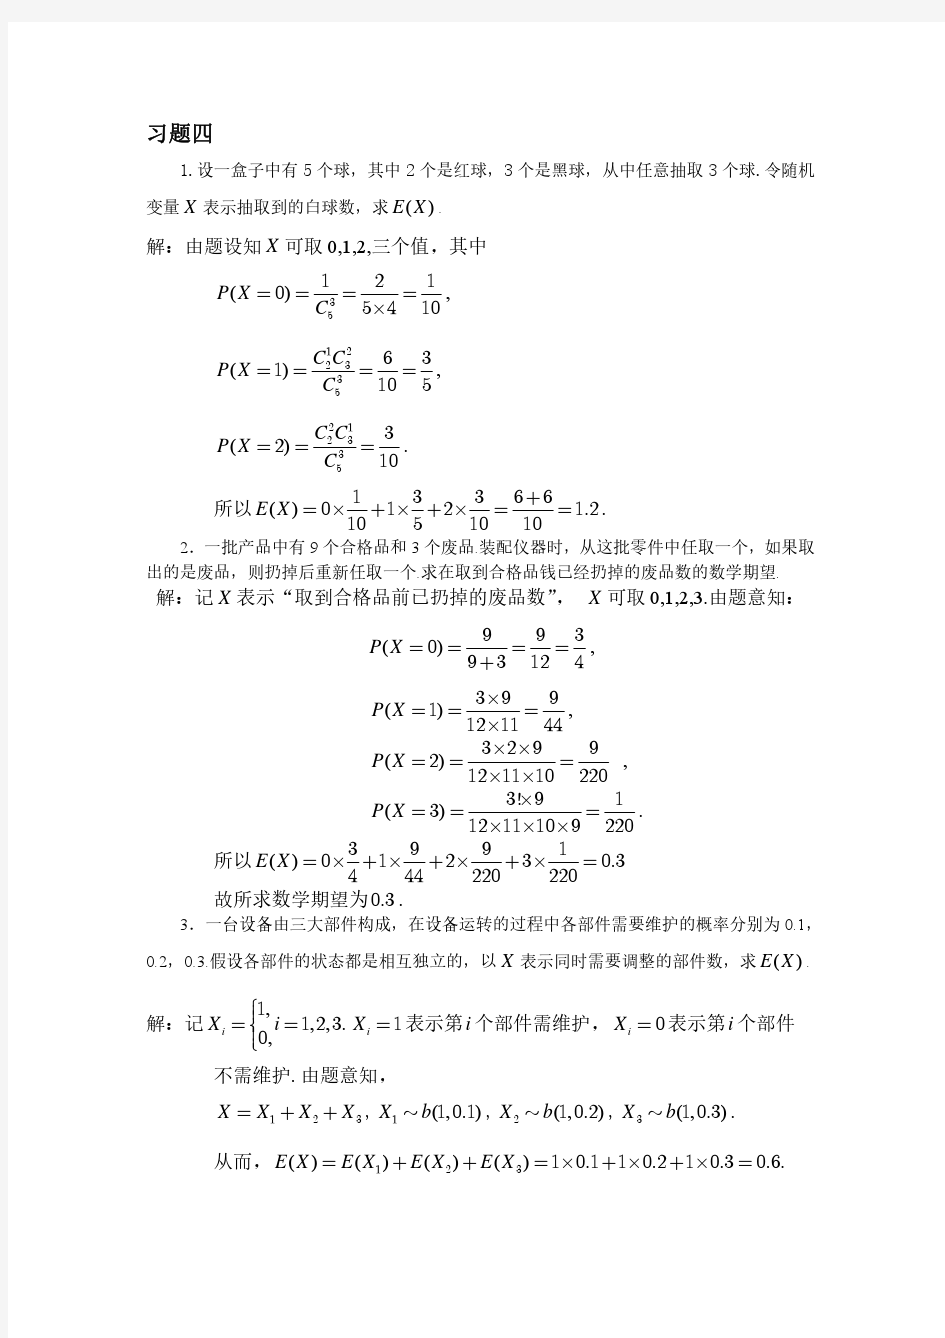 概率论与数理统计(海南大学)第四章习题详解